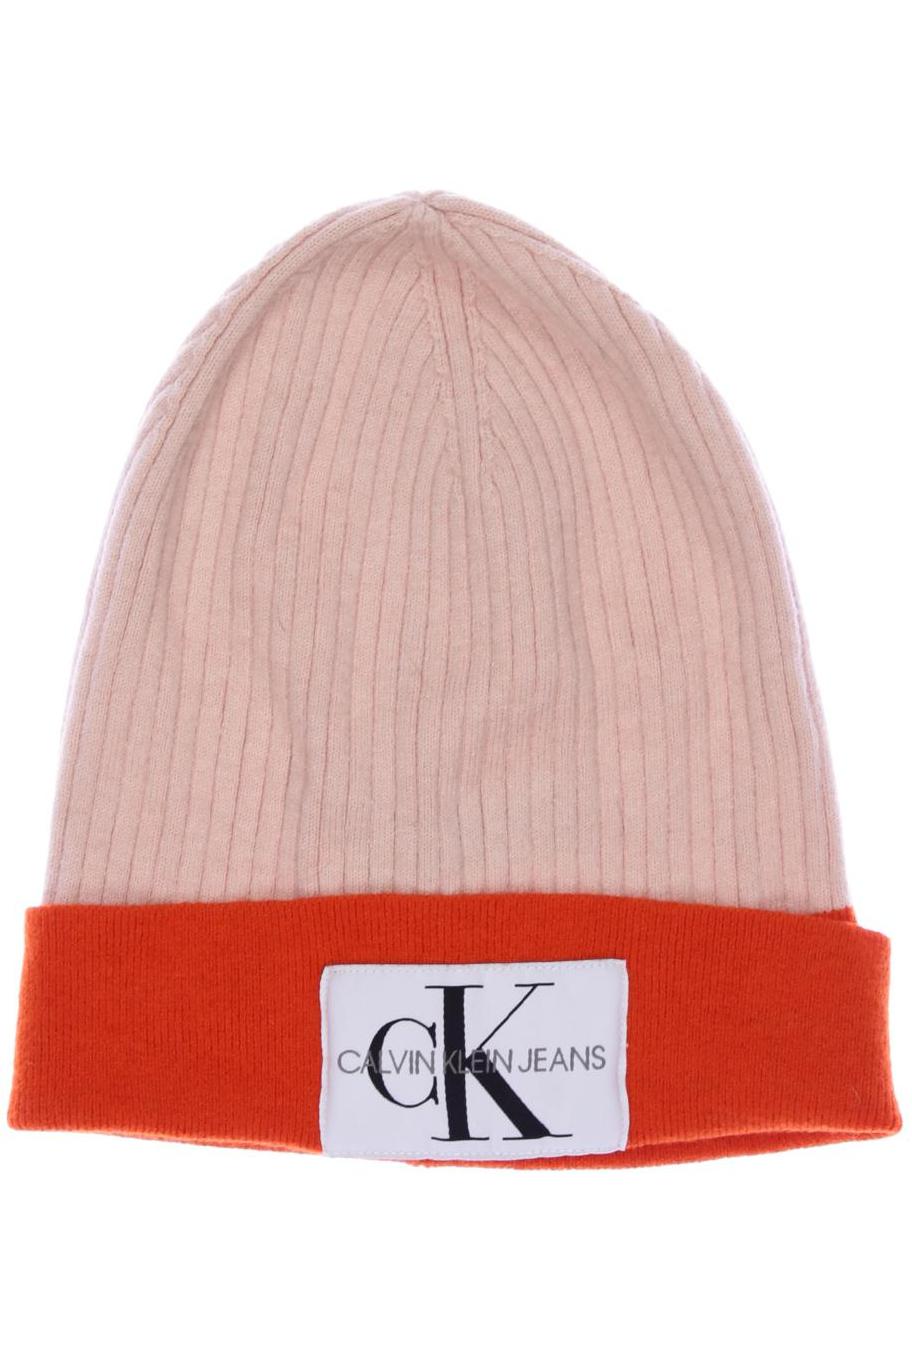 Calvin Klein Jeans Damen Hut/Mütze, orange von Calvin Klein Jeans